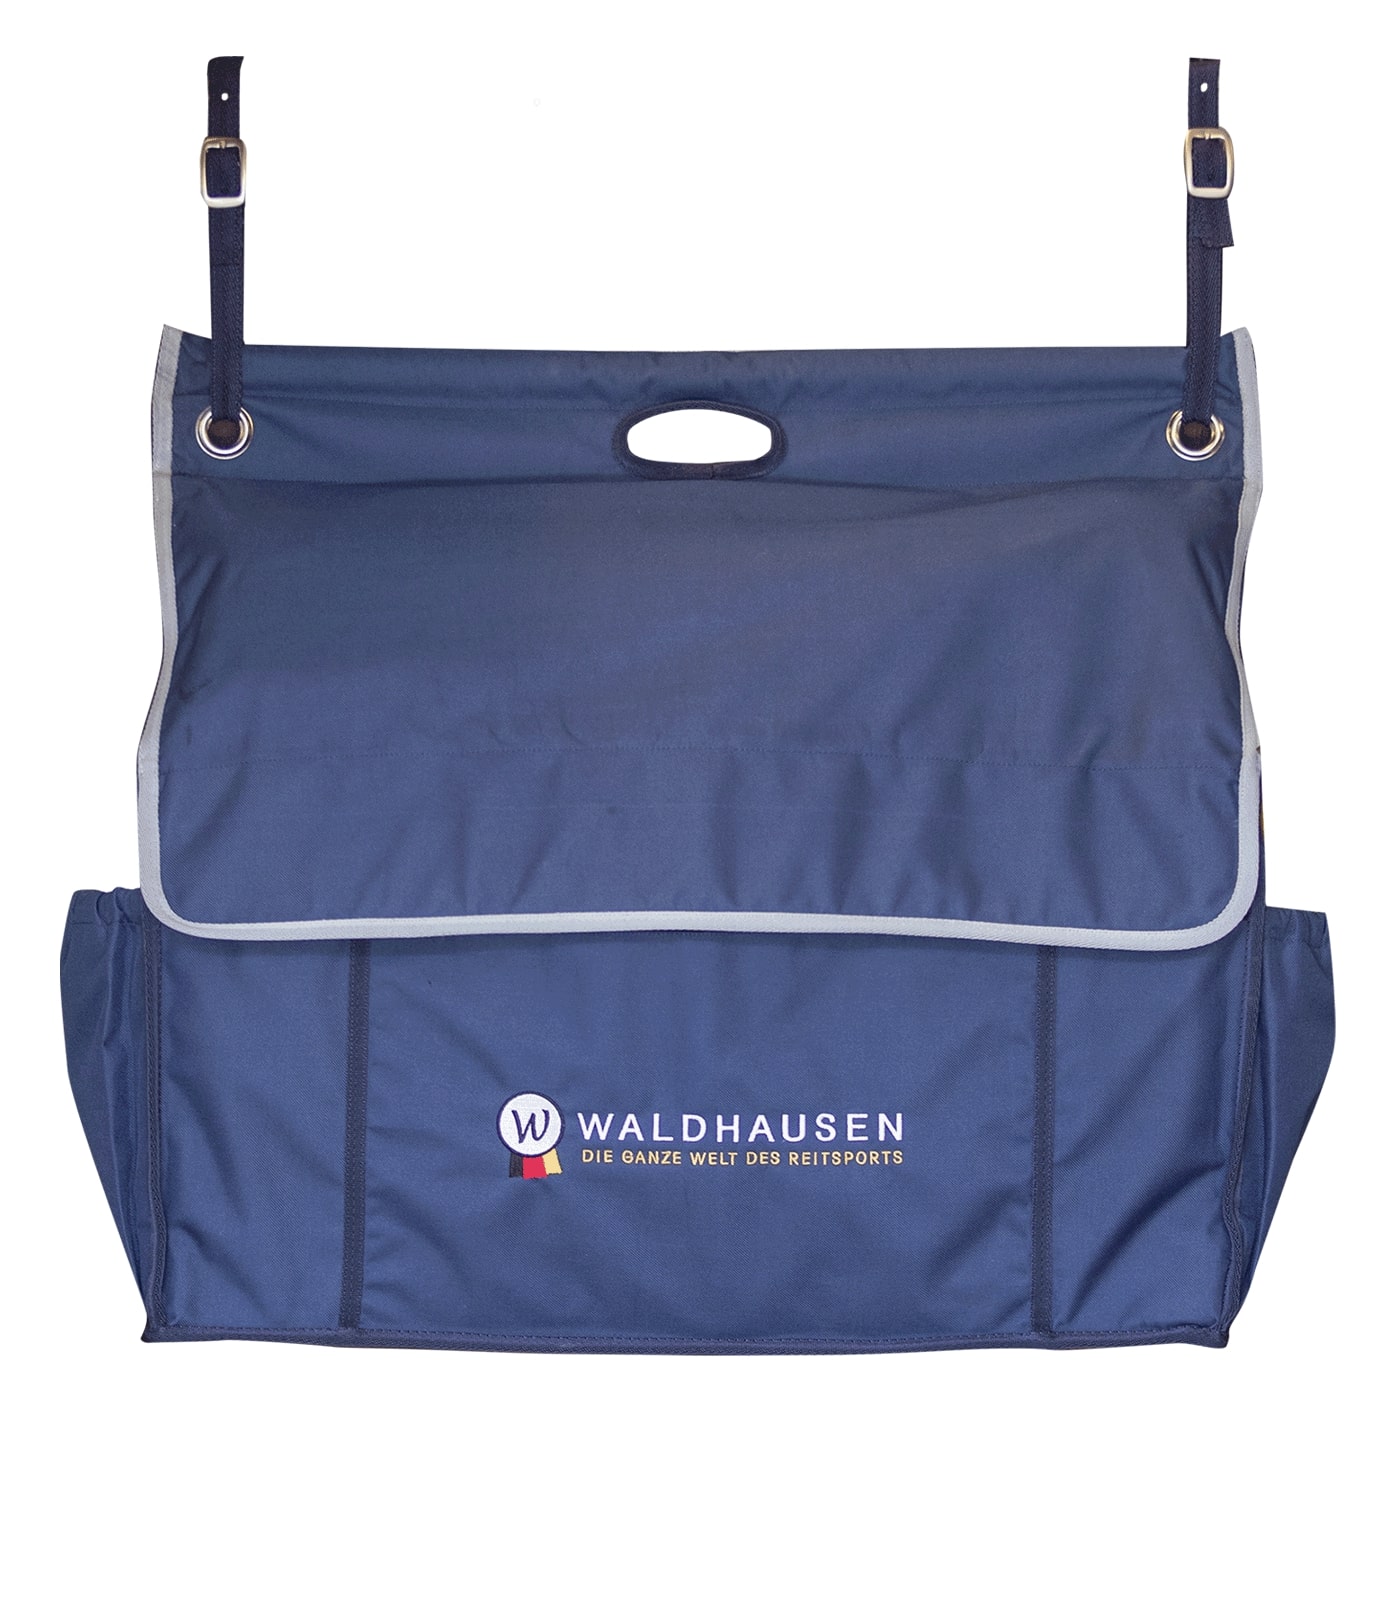 Waldhausen Stable Bag